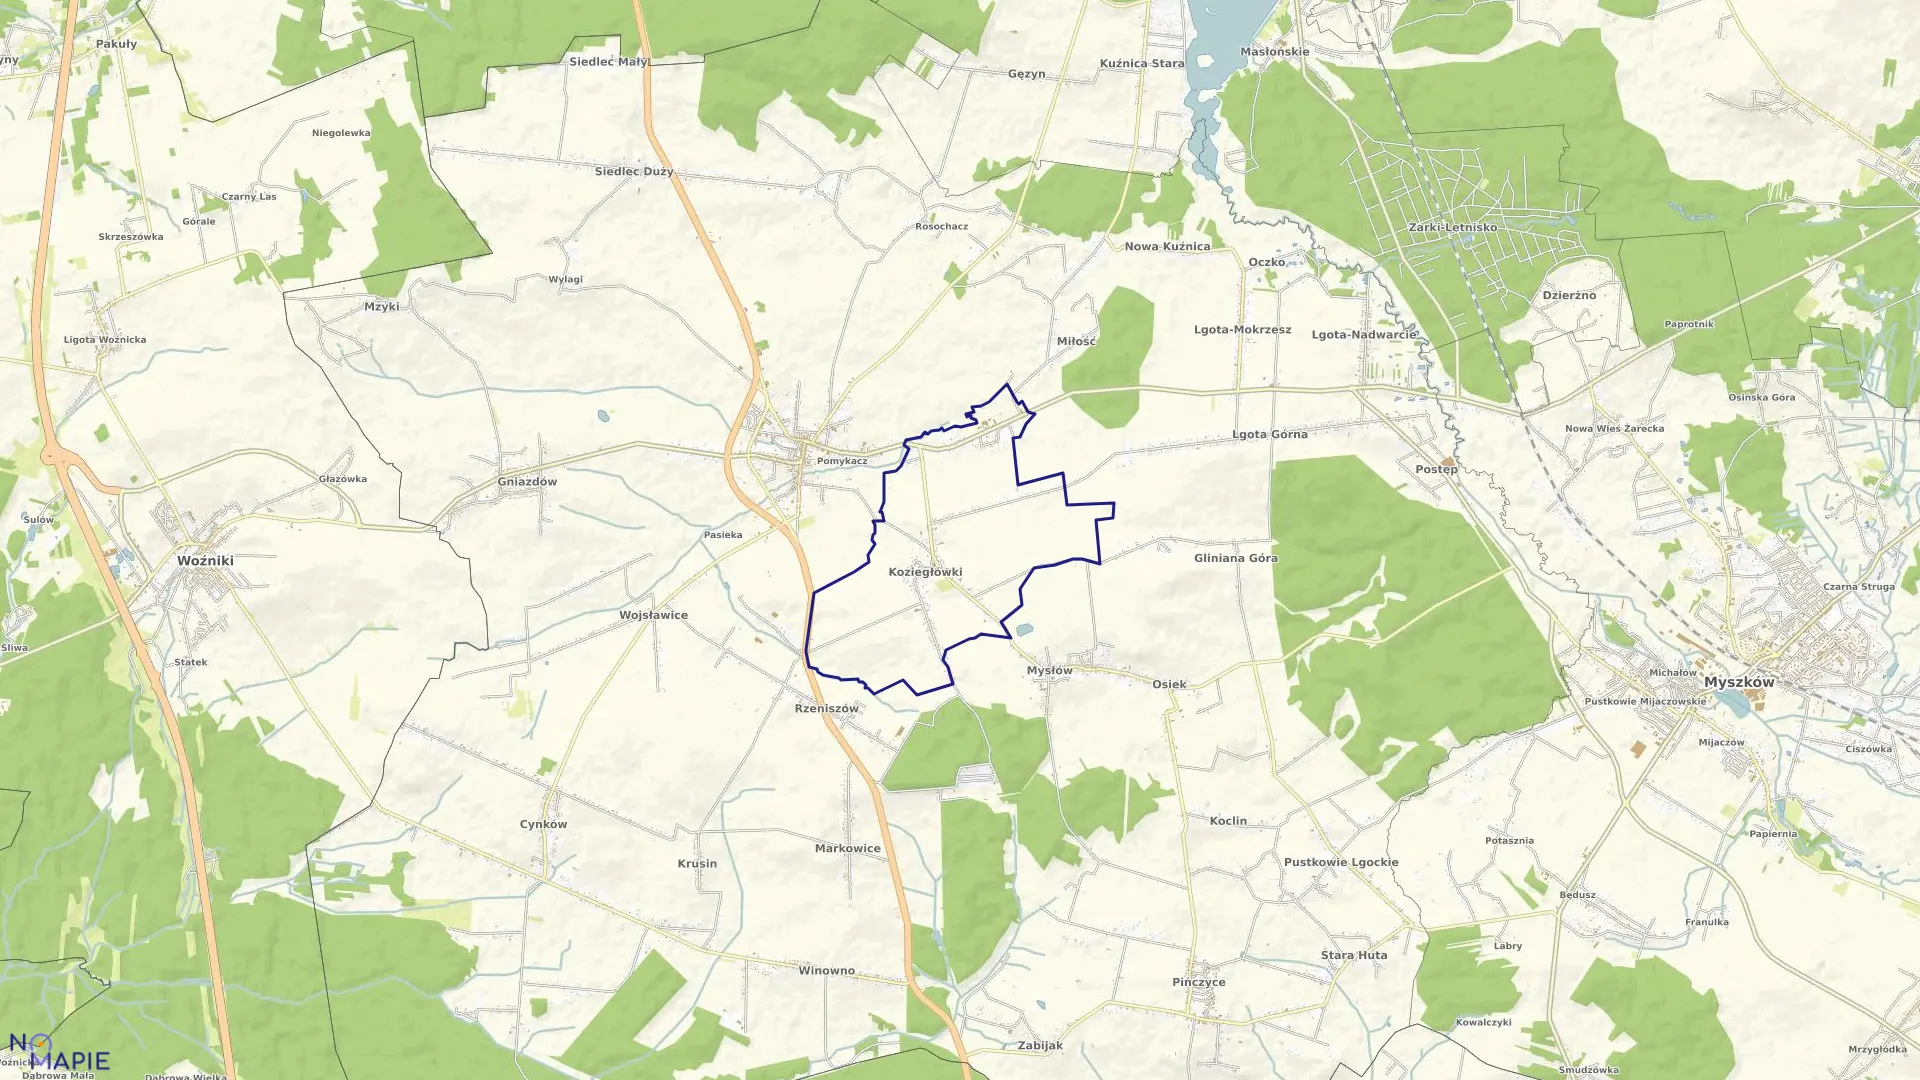 Mapa obrębu Koziegłówki w gminie Koziegłowy